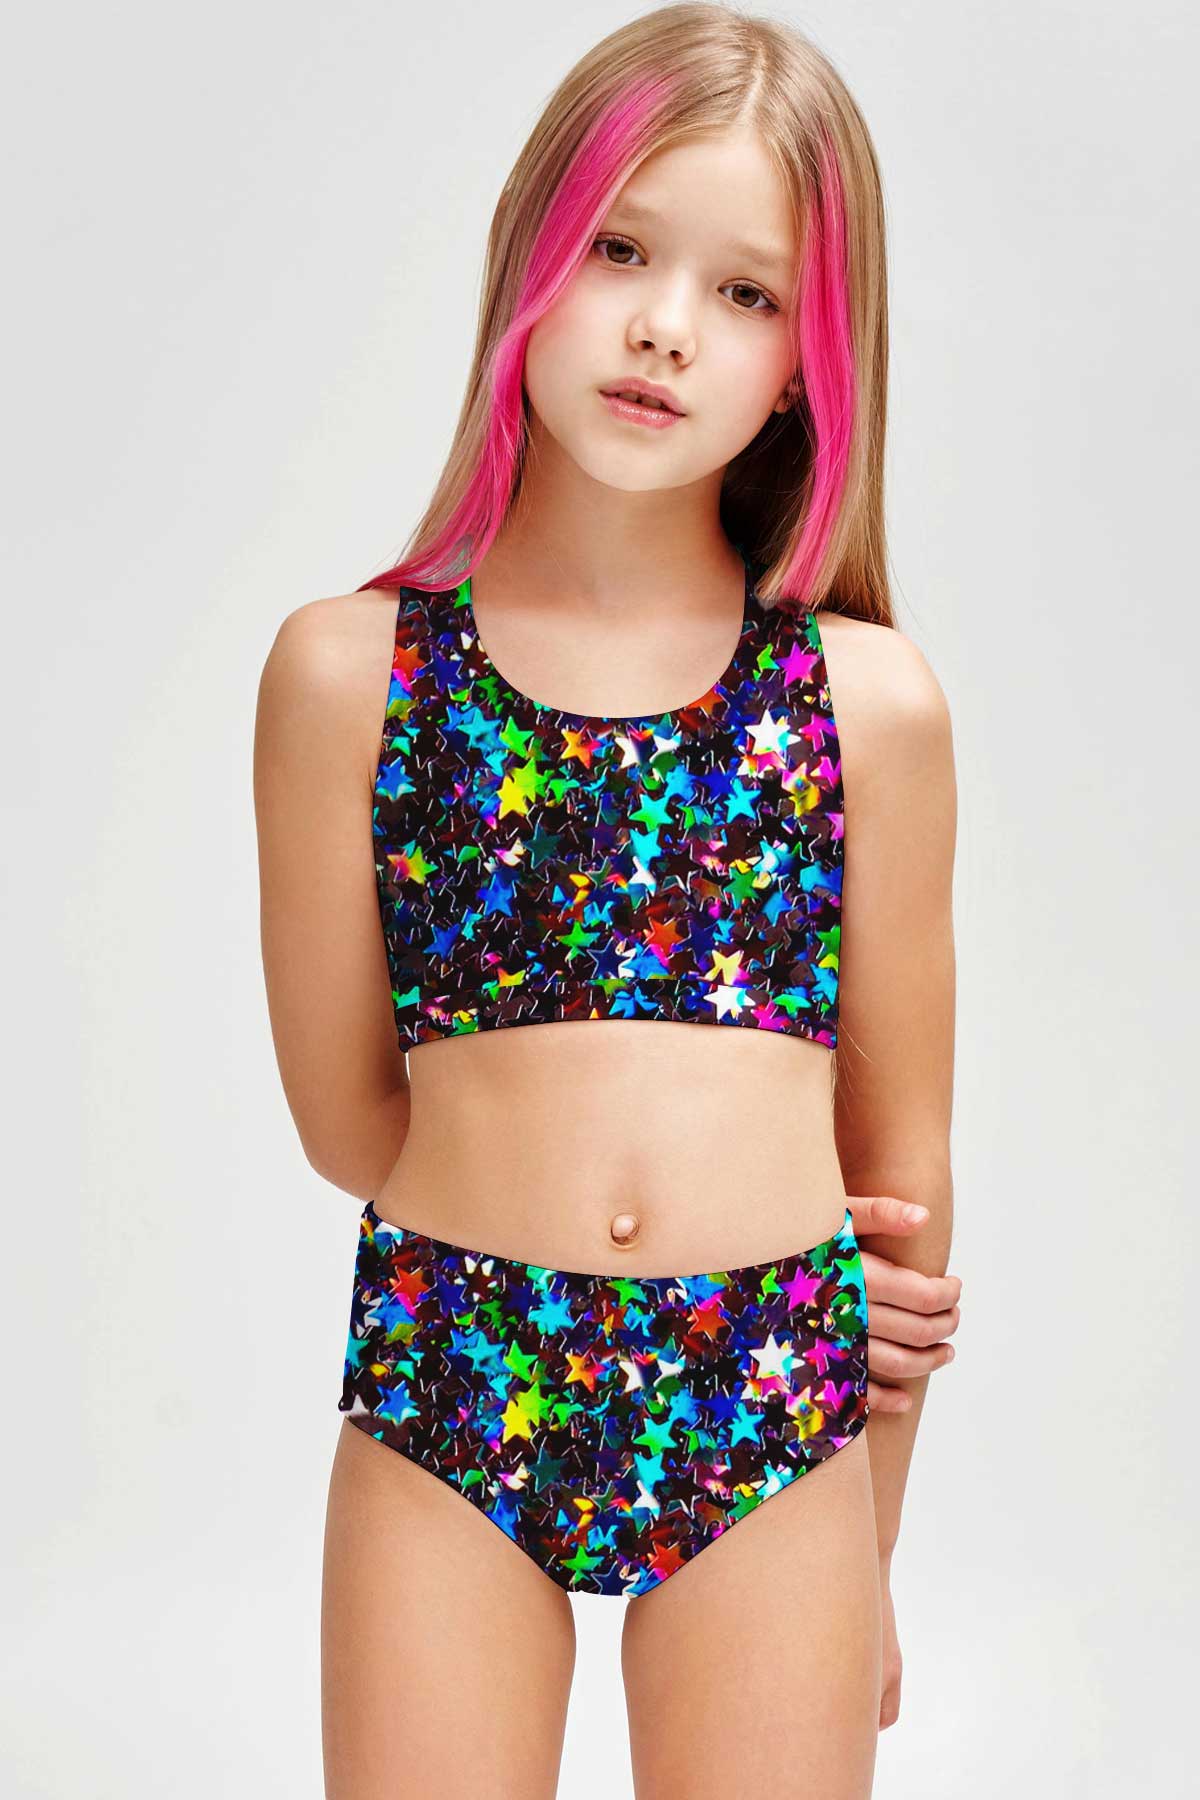 Fireworks Claire Glitter Sporty Two Piece Swim Bikini Set - Girls - Pineapple Clothing